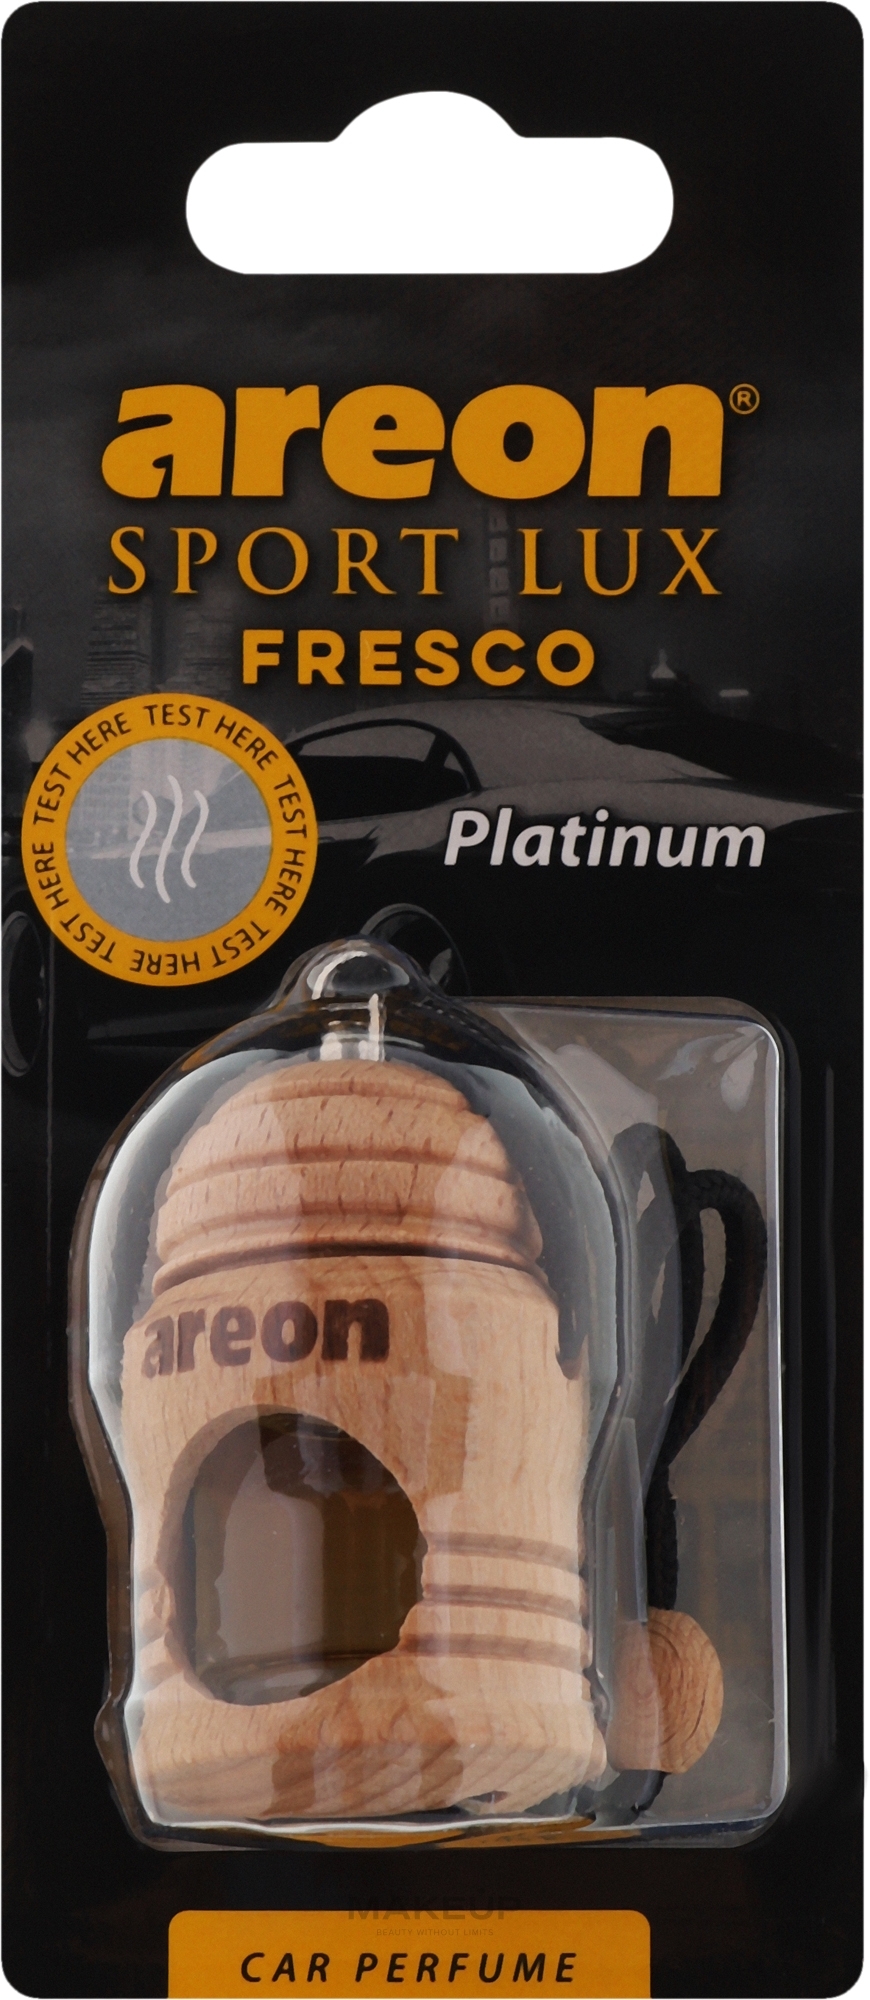 Odświeżacz powietrza do samochodu - Areon Fresco Sport Lux Platinum Car Perfume — Zdjęcie 4 ml